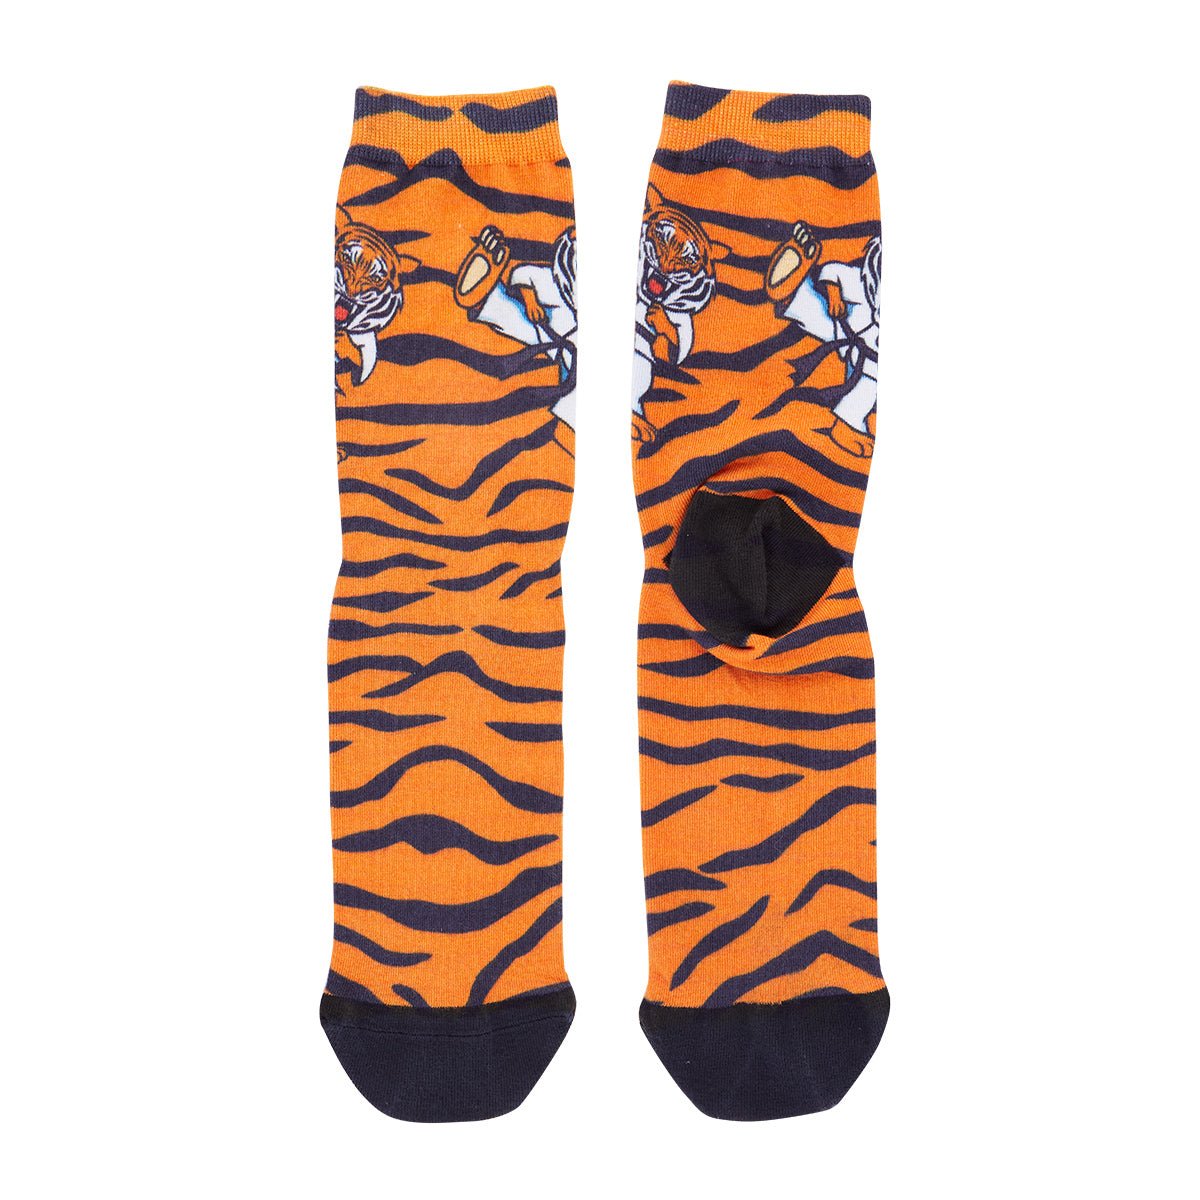 http://centurymartialarts.com/cdn/shop/products/tiger-socks-283577.jpg?v=1687811093